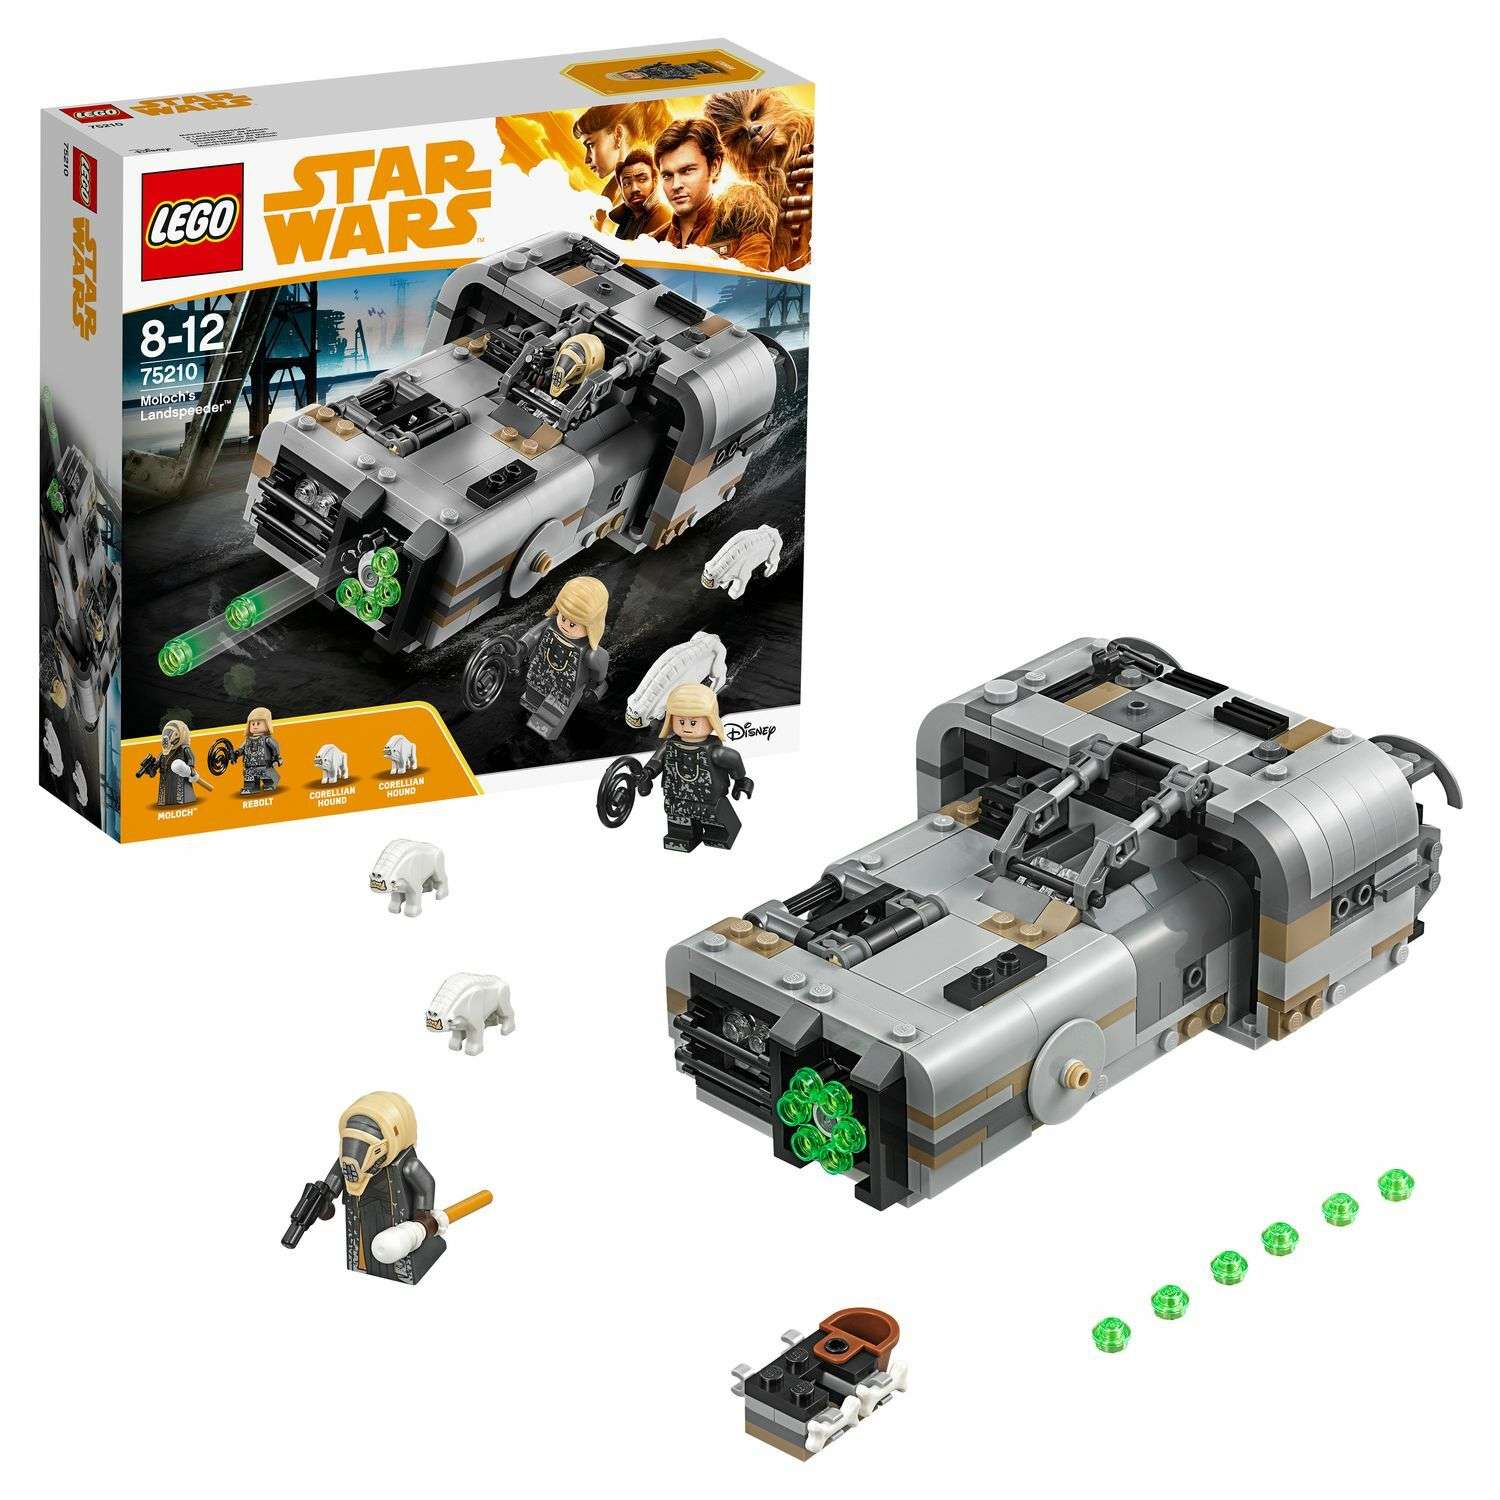 Конструктор LEGO Star Wars Спидер Молоха (75210) - фото 1